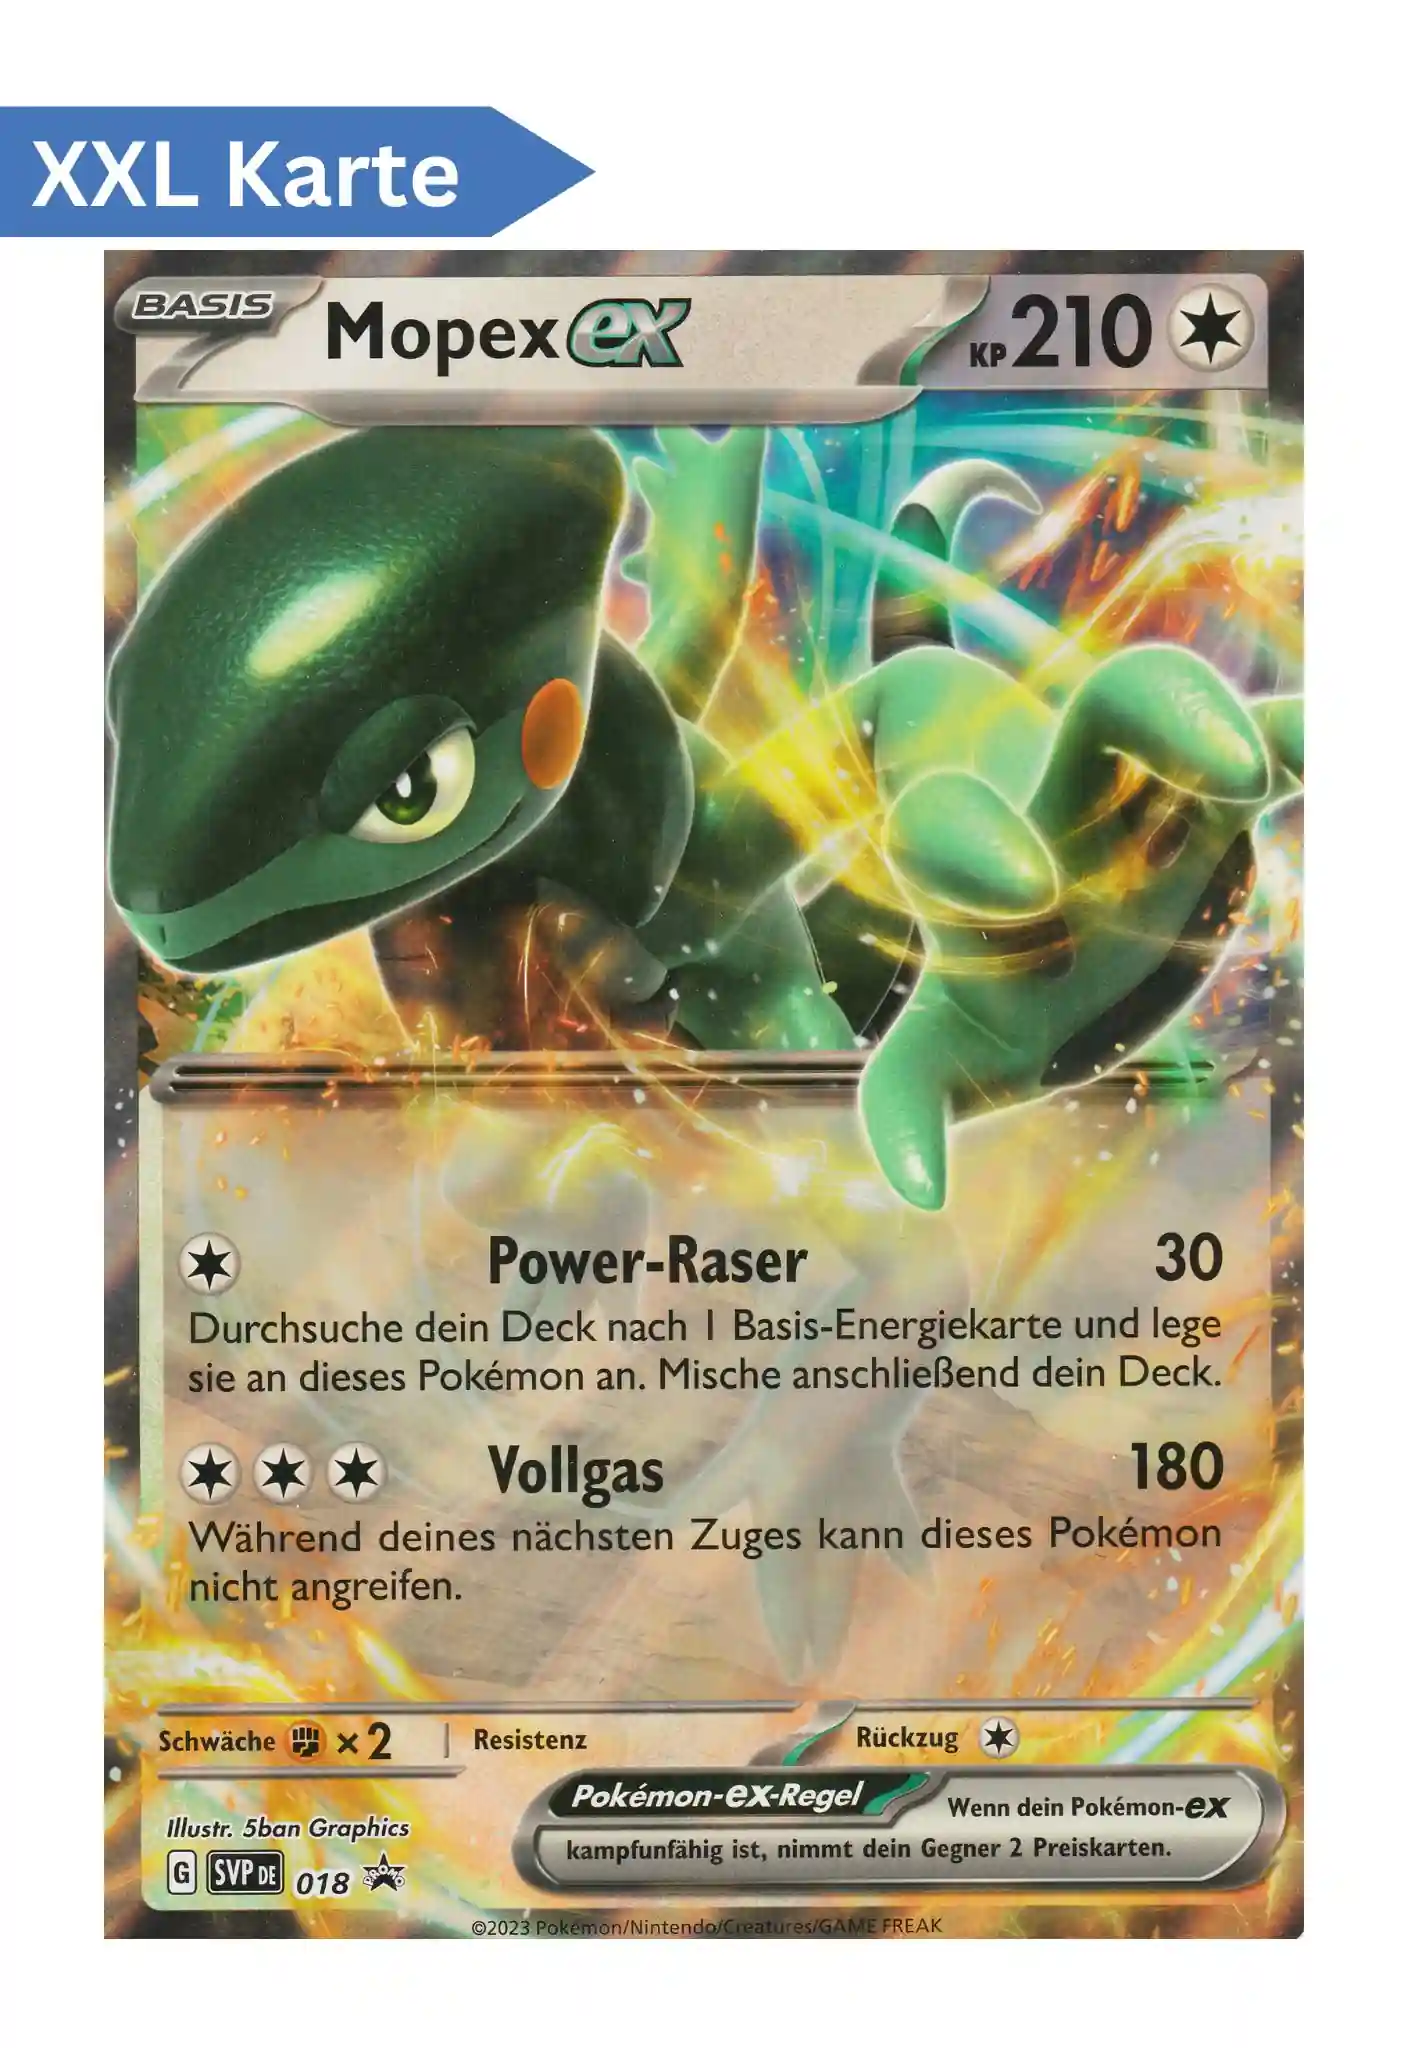 Mopex EX (SVP 018) – XXL Pokemon Promo Karte in Deutsch